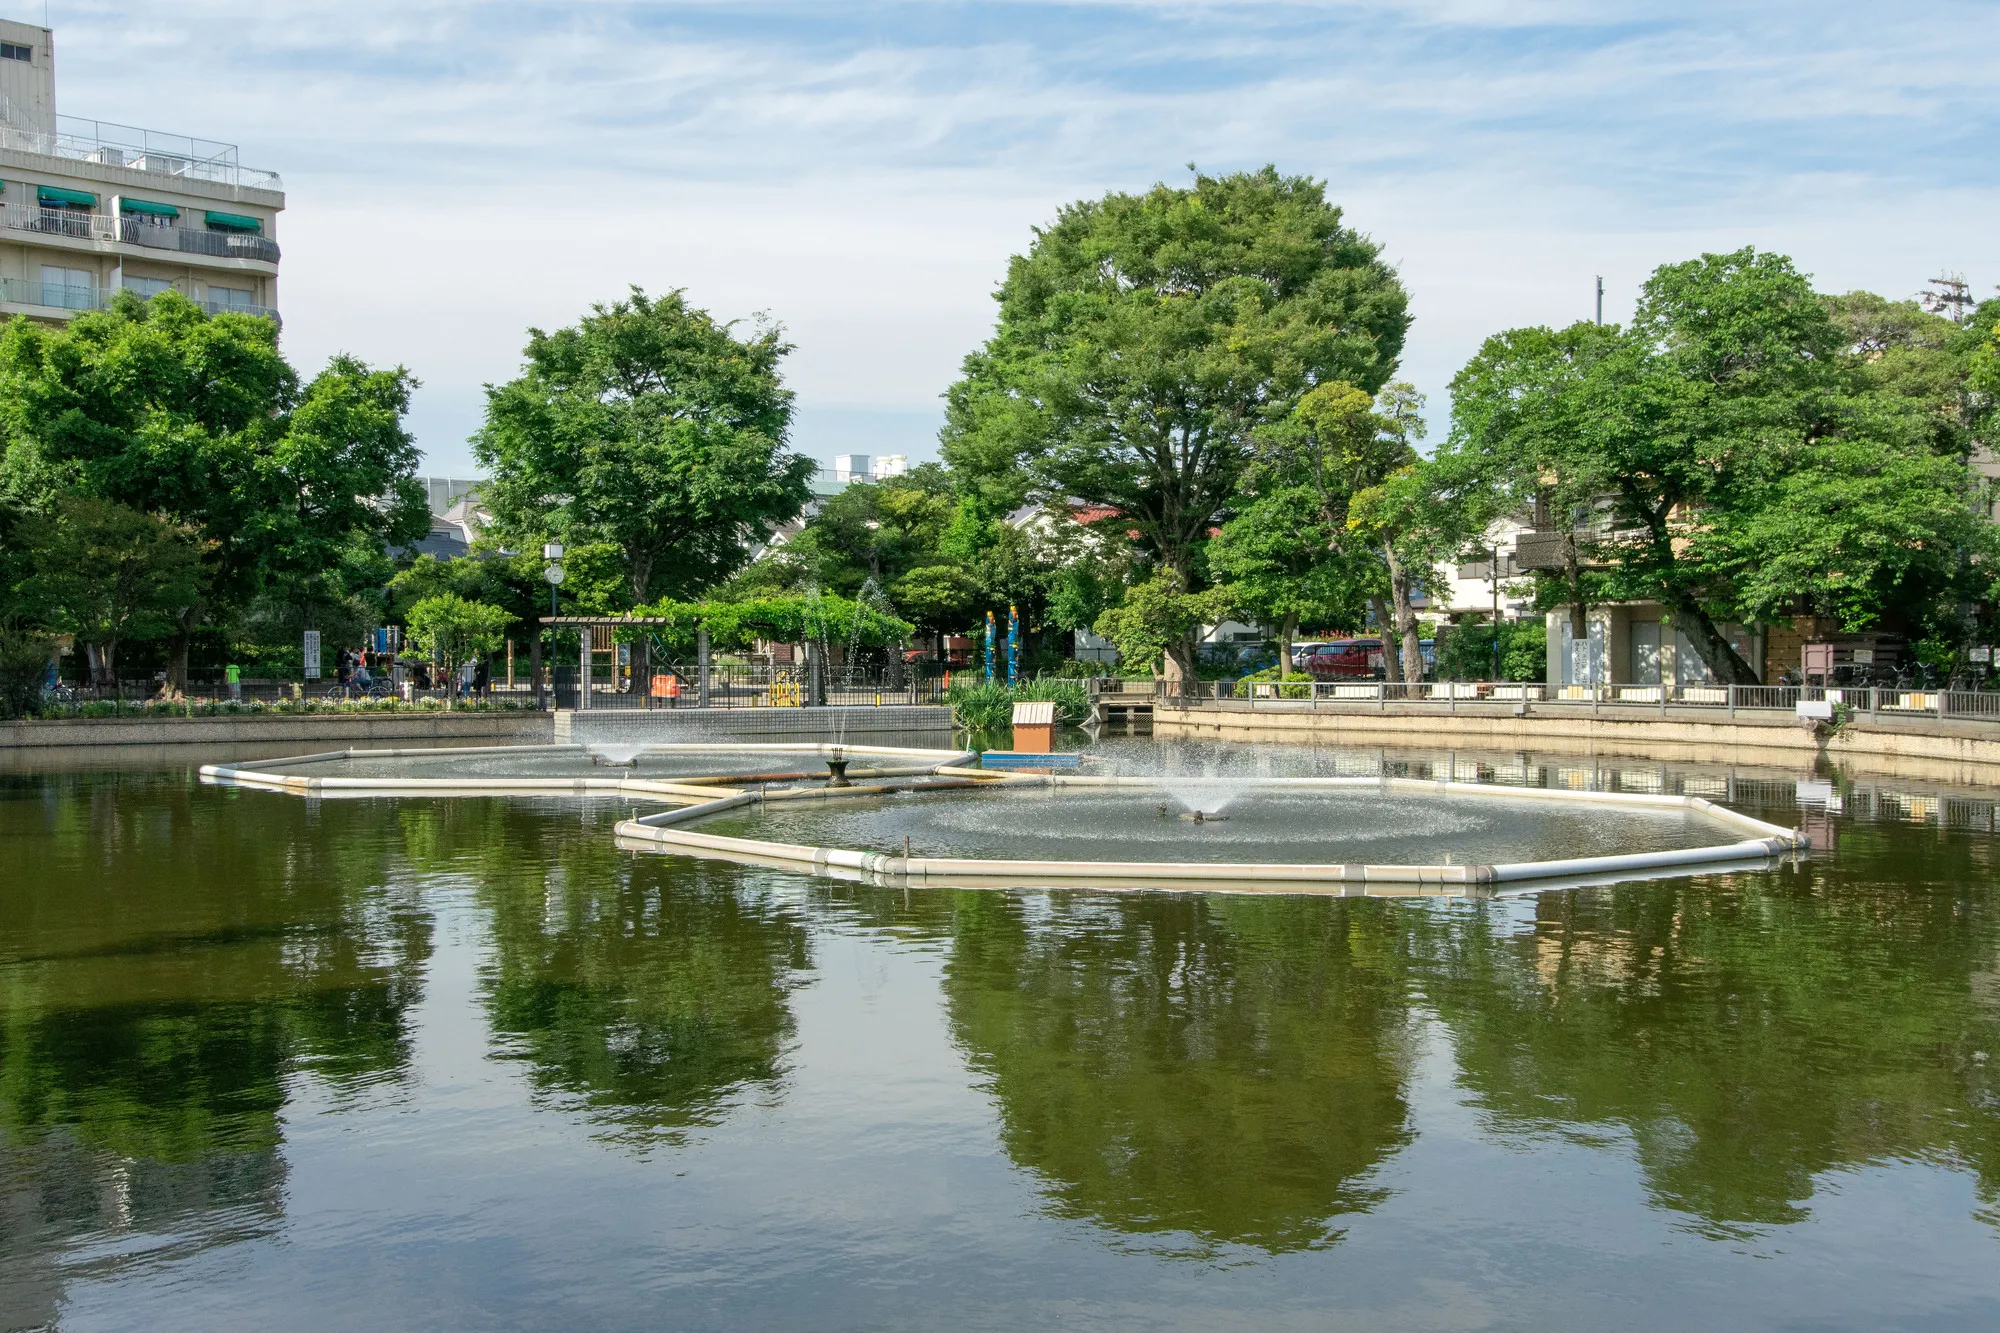 清水池公園